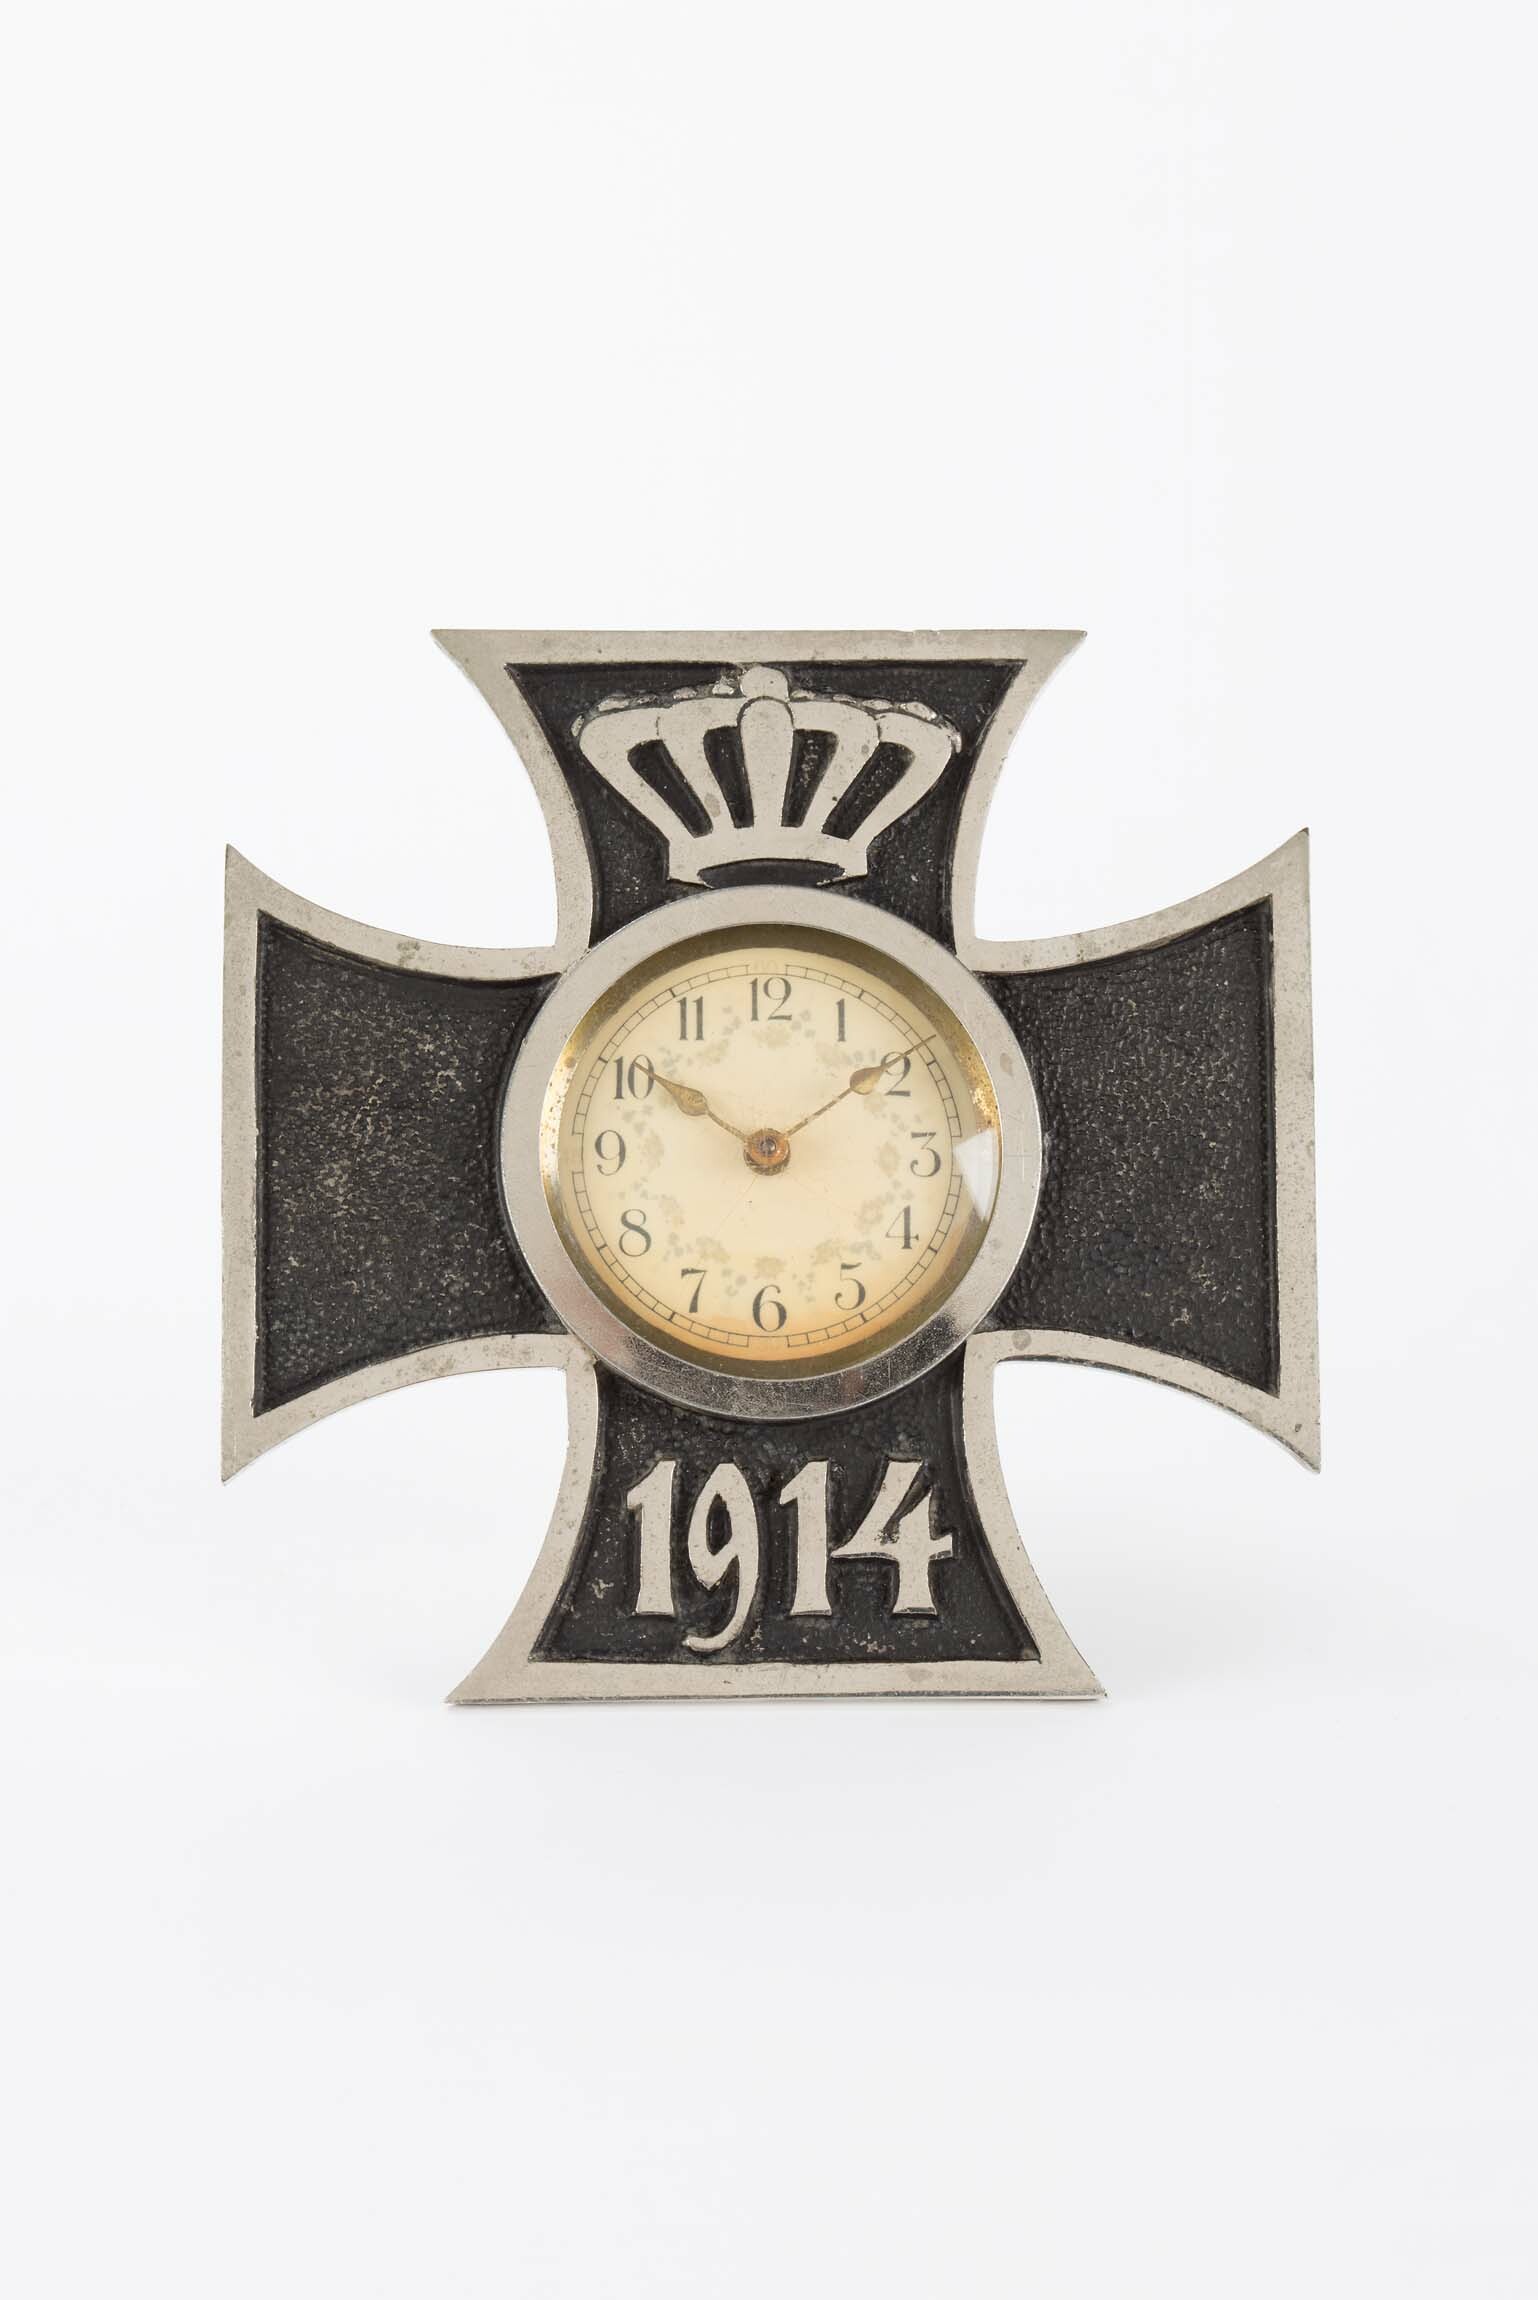 Tischuhr Eisernes Kreuz 1914, um 1914 (Deutsches Uhrenmuseum CC BY-SA)